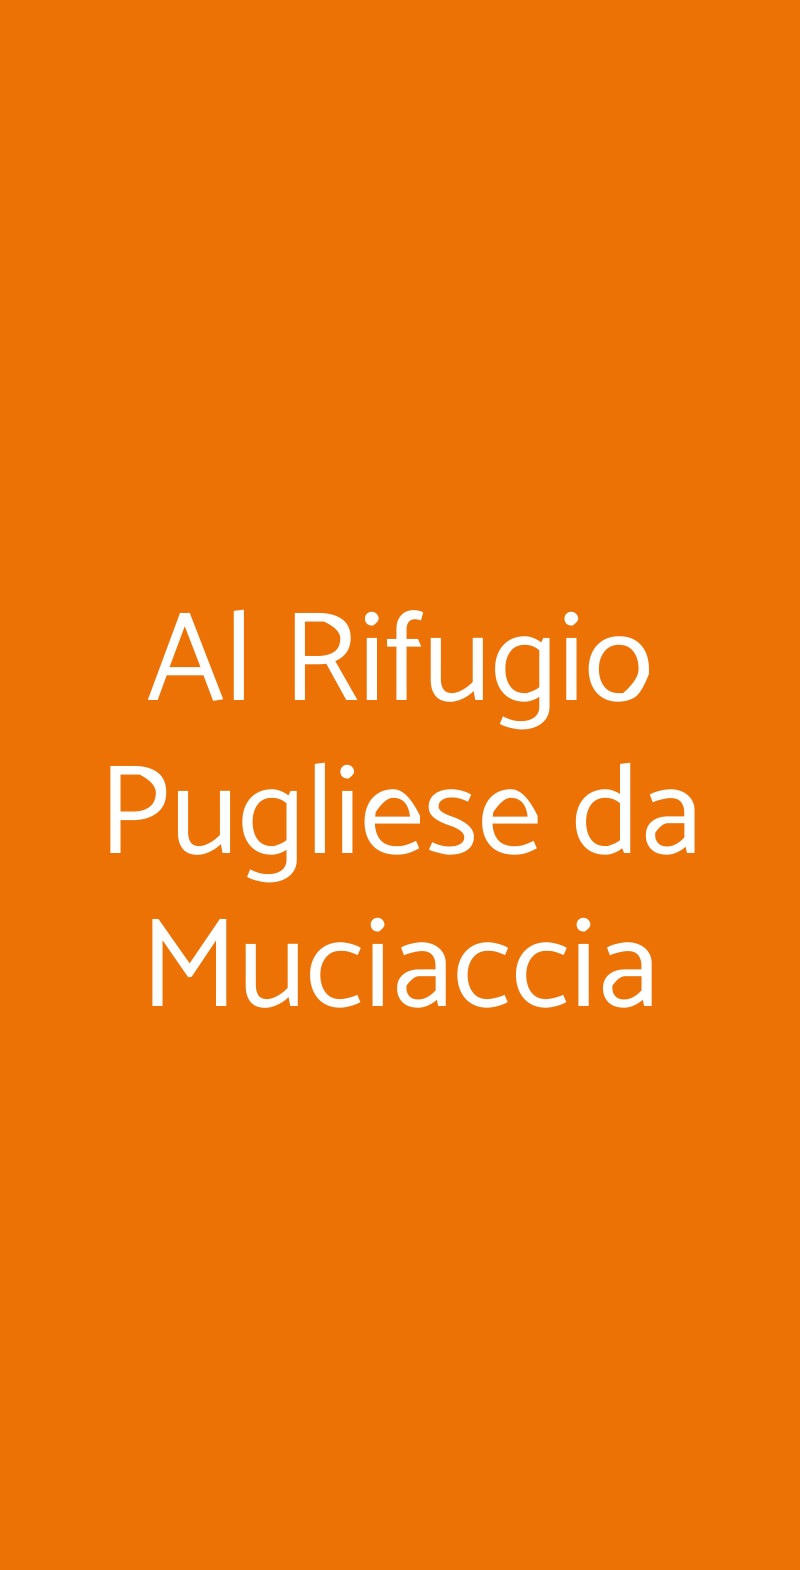 Al Rifugio Pugliese da Muciaccia Milano menù 1 pagina